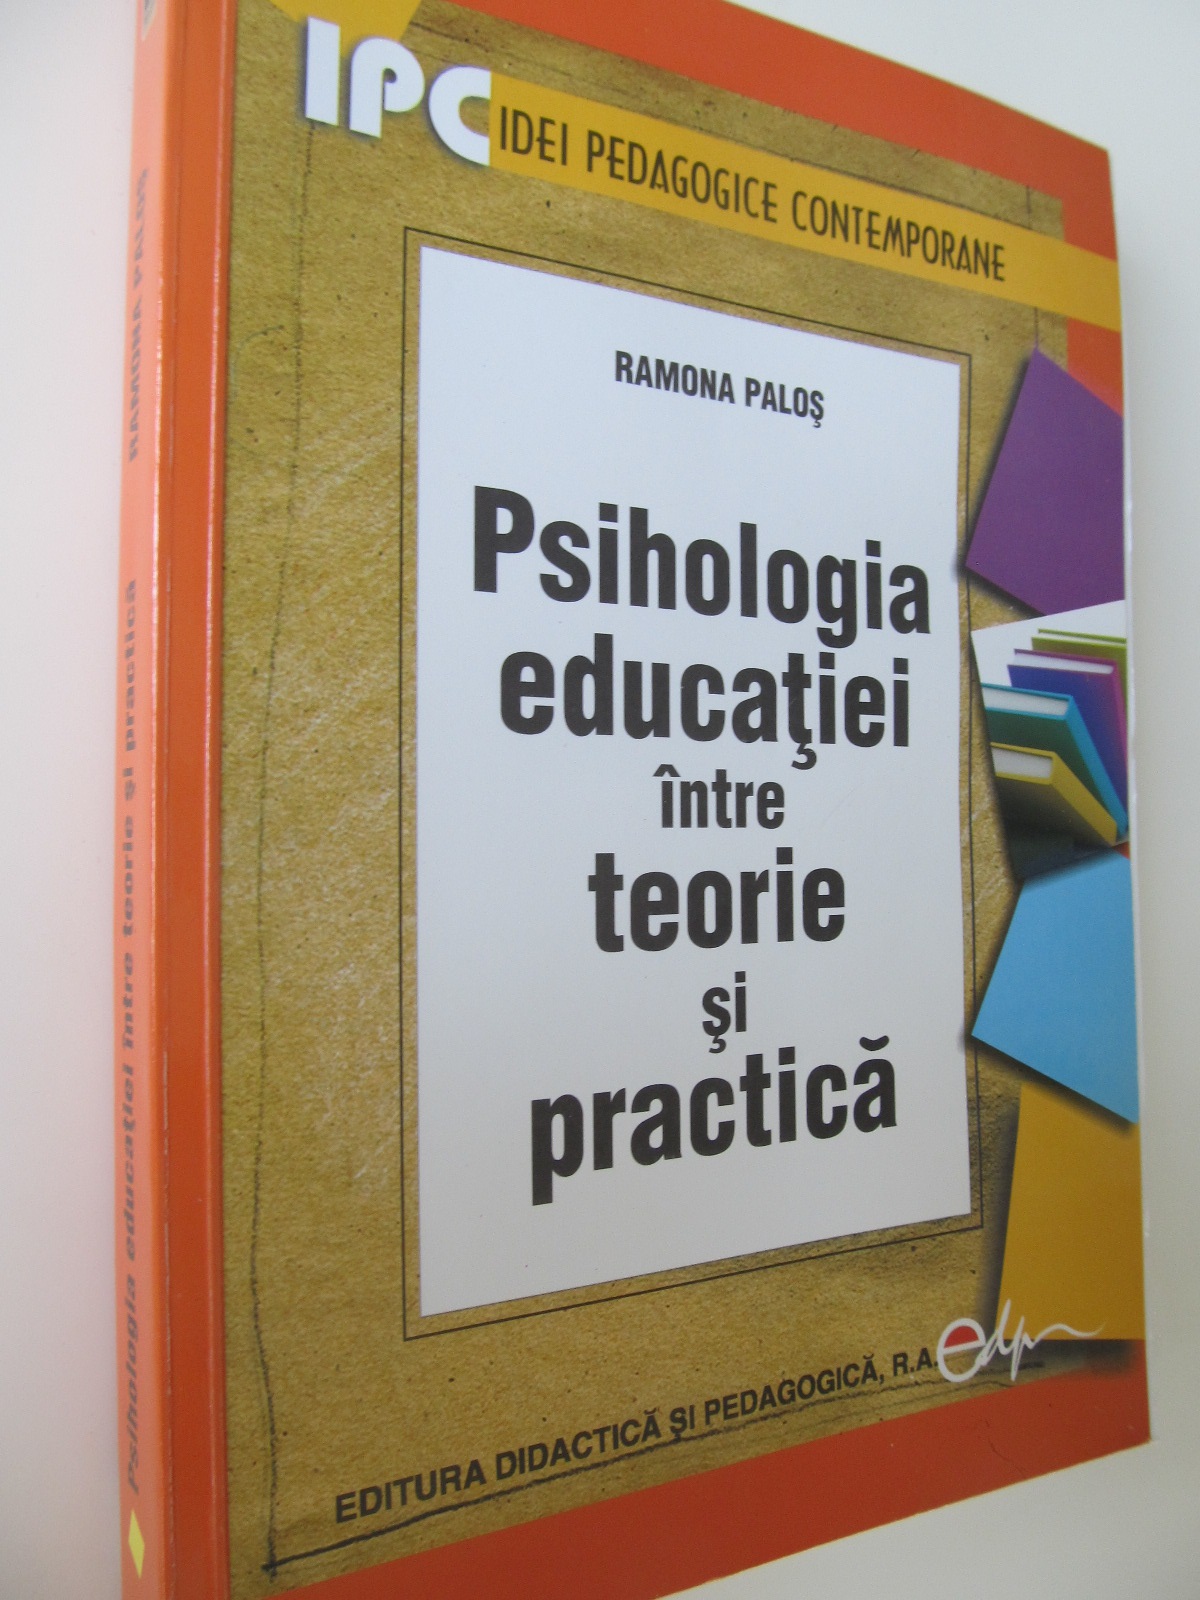 Psihologia educatiei intre teorie si practica - Ramona Palos | Detalii carte